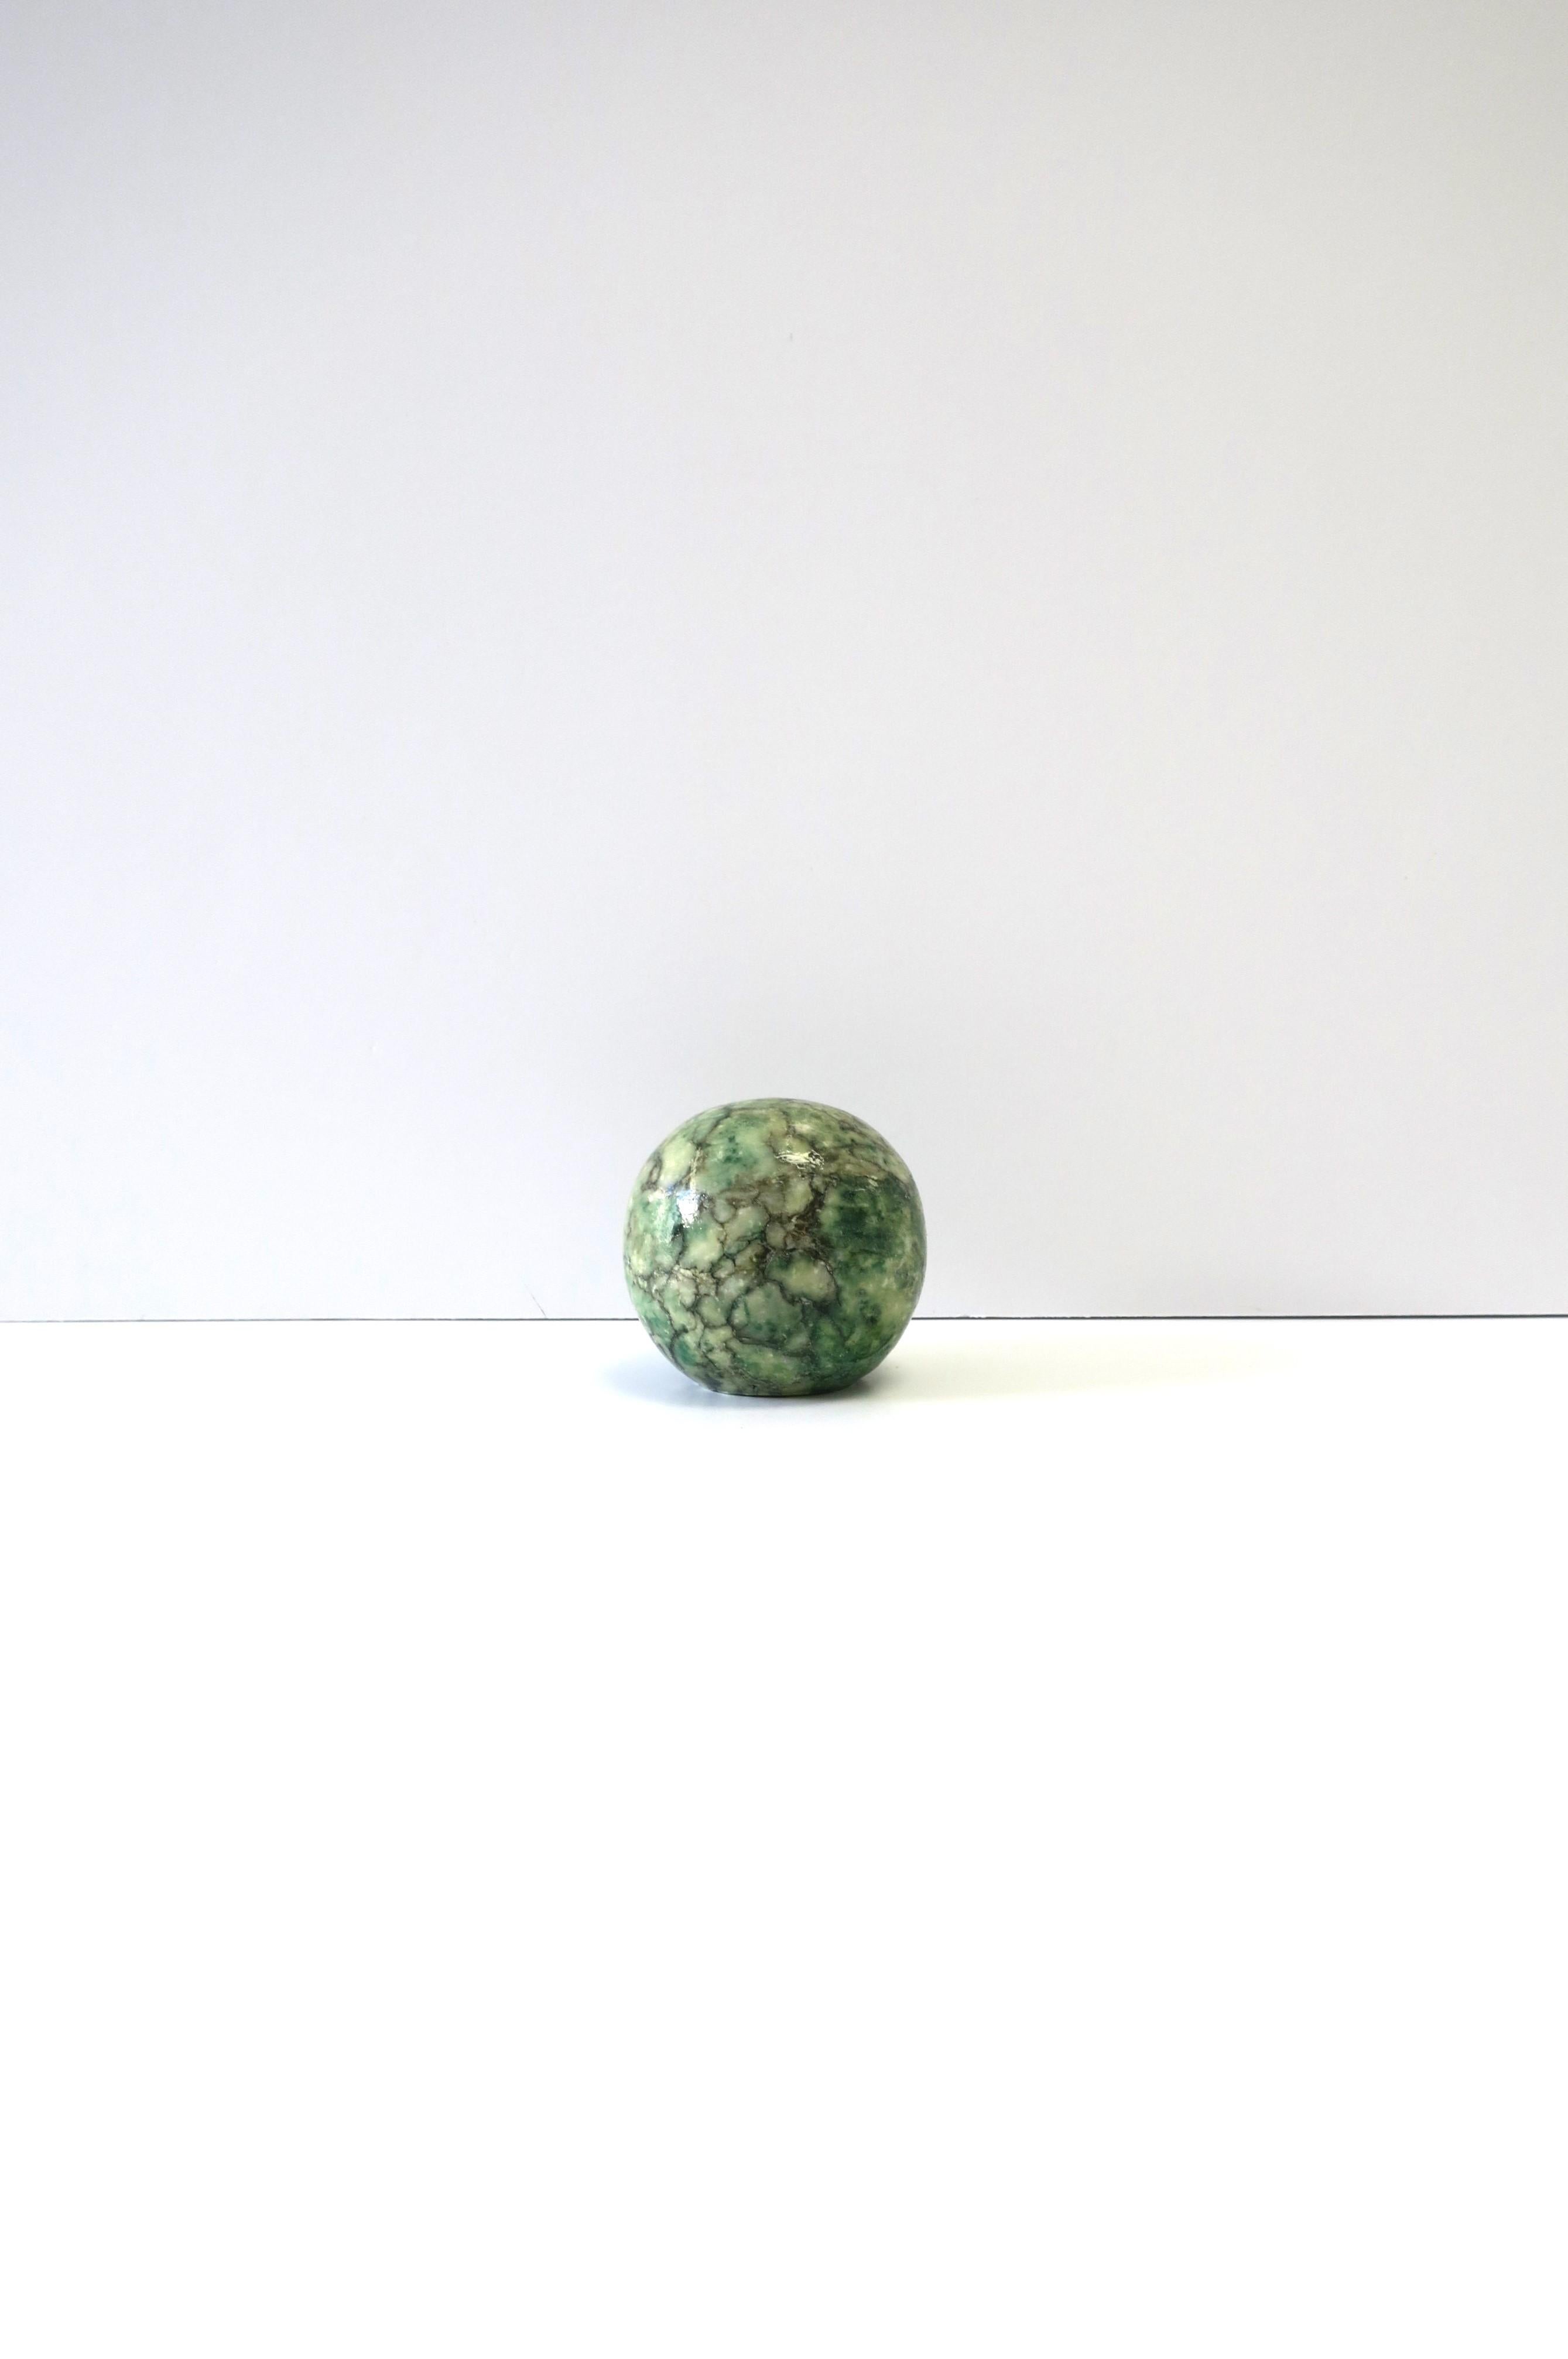 Petite sphère ou presse-papier en marbre d'albâtre vert, noir et blanc, '70 Modern', vers les années 1970, Italie. Un superbe objet décoratif ou presse-papier pour un bureau, une étagère, une bibliothèque, etc. Dimensions : 2,25